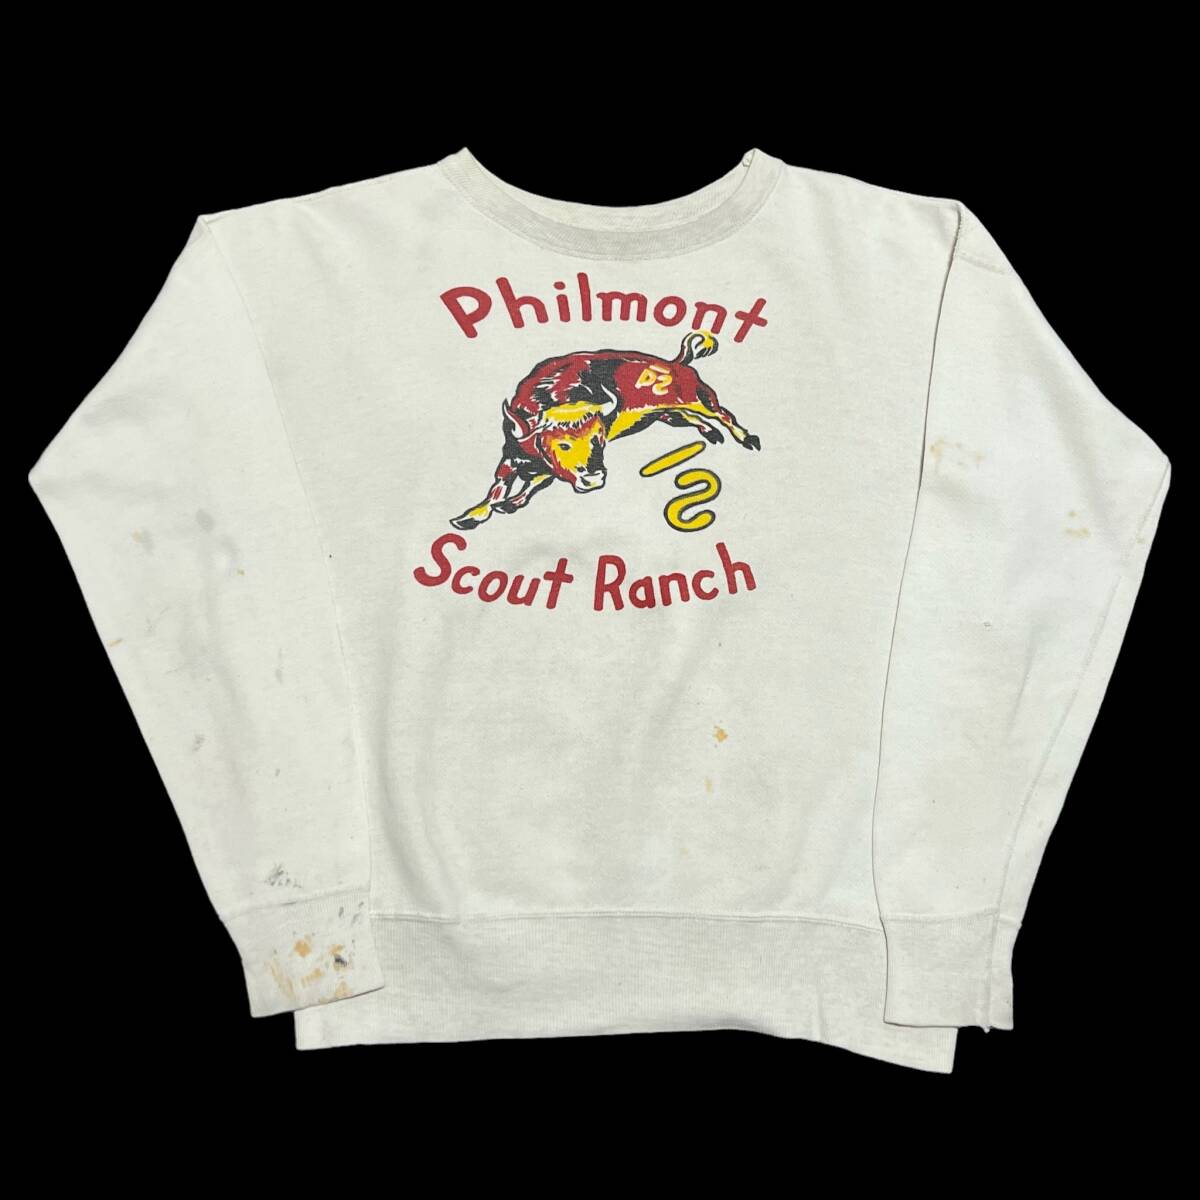 Vintage 50s Soaked Print Sweatshirt 染み込み プリント スウェット ボーイスカウト ホワイト 50年代 ヴィンテージ ビンテージの画像1